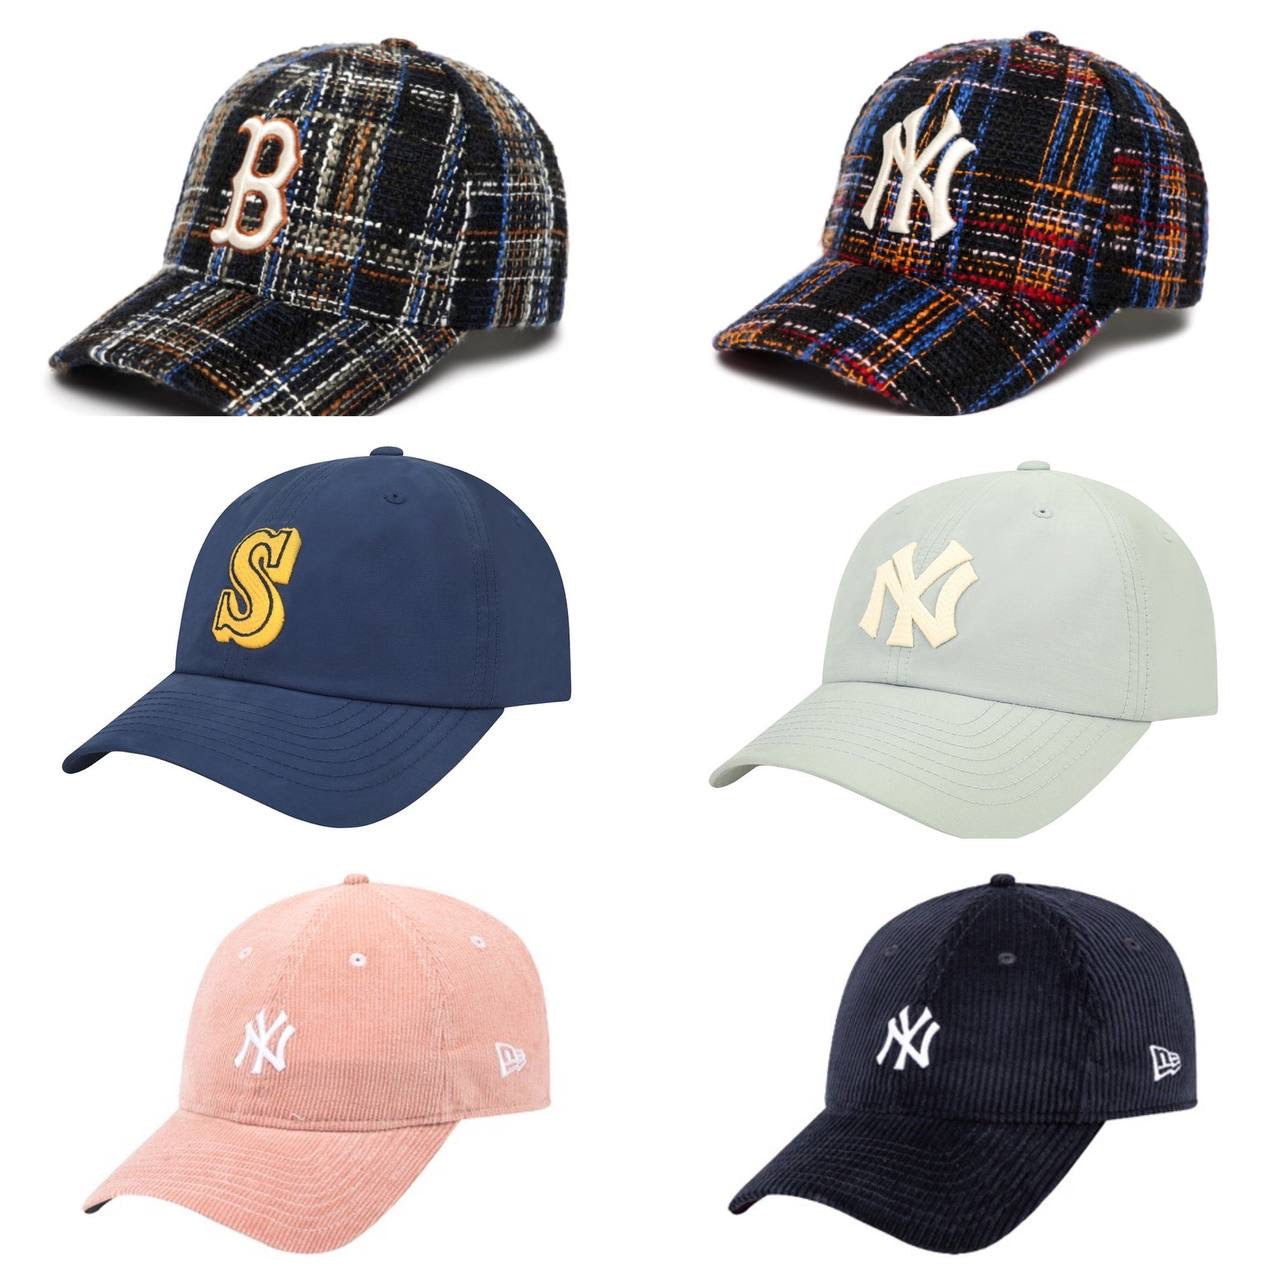 MLB YANKEES NEWERA Cap - Collection #7